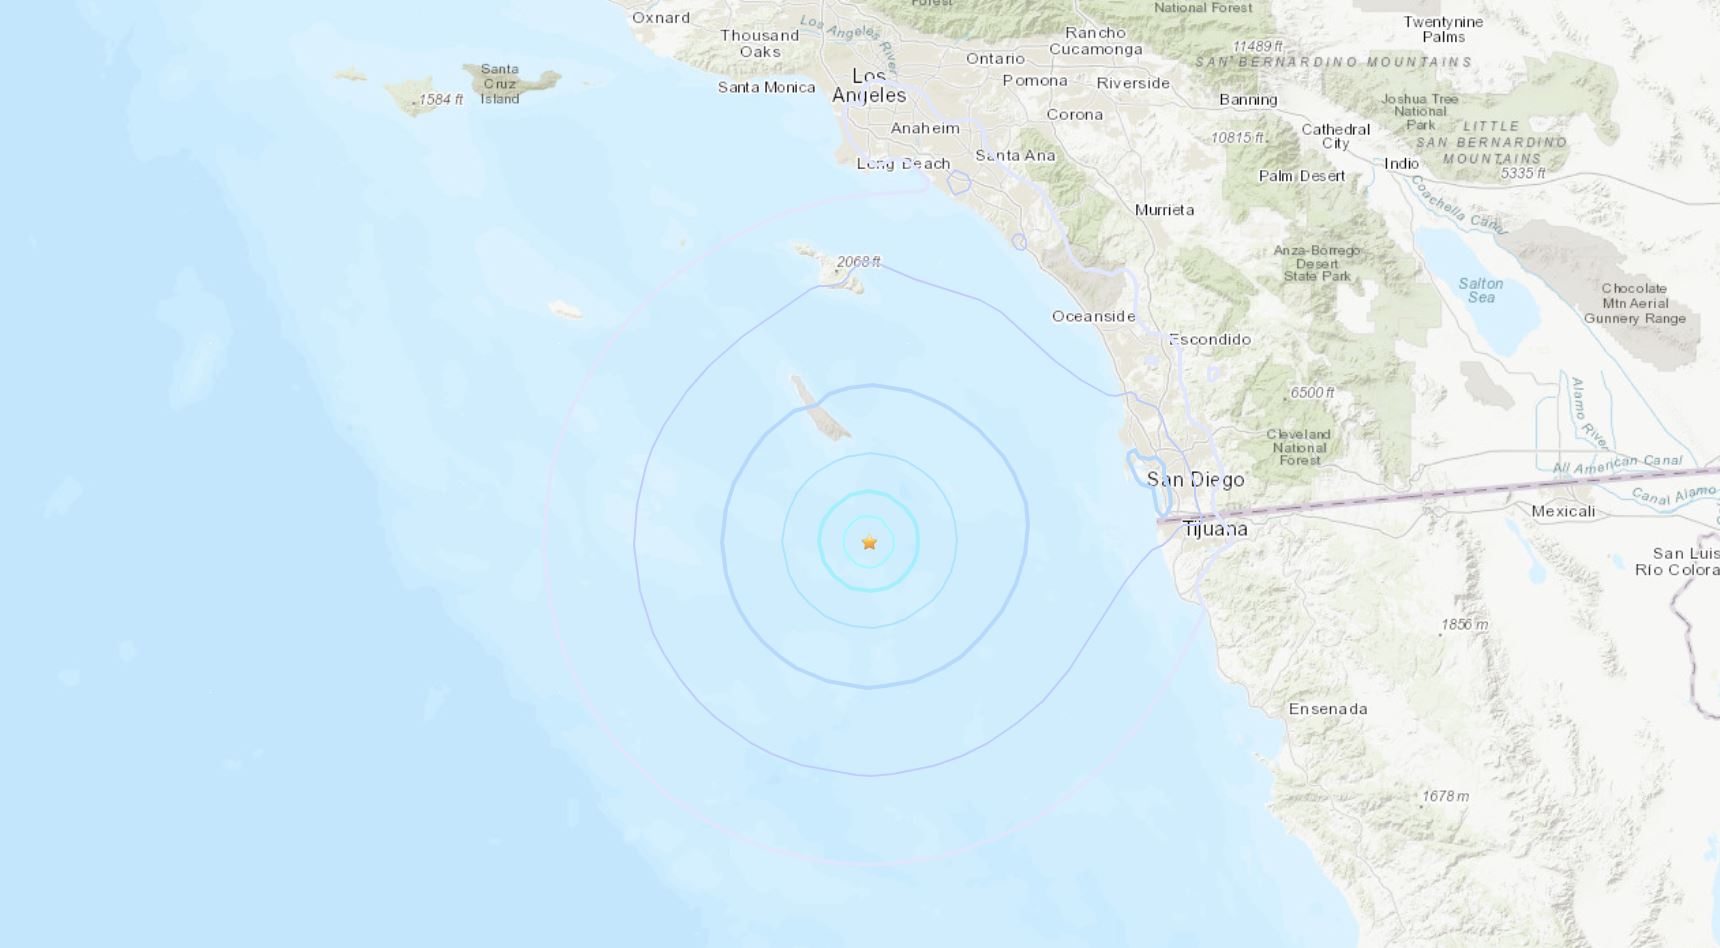 temblor de magnitud 4.4 frente a la costa del sur de california sacude partes de los ángeles